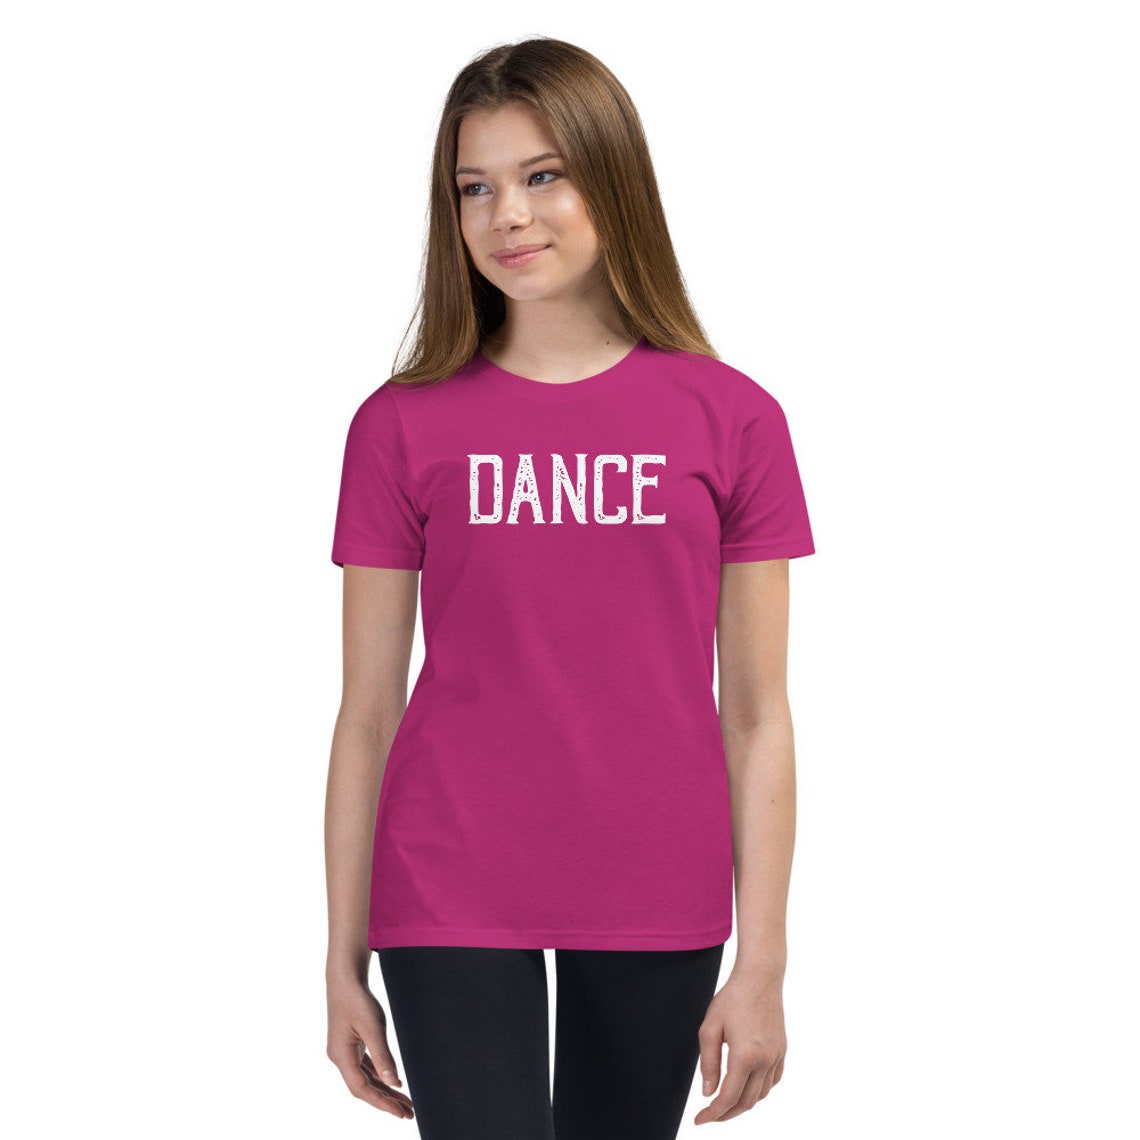 Dance Youth T Shirt Ballerina Dancer Gift | Etsy